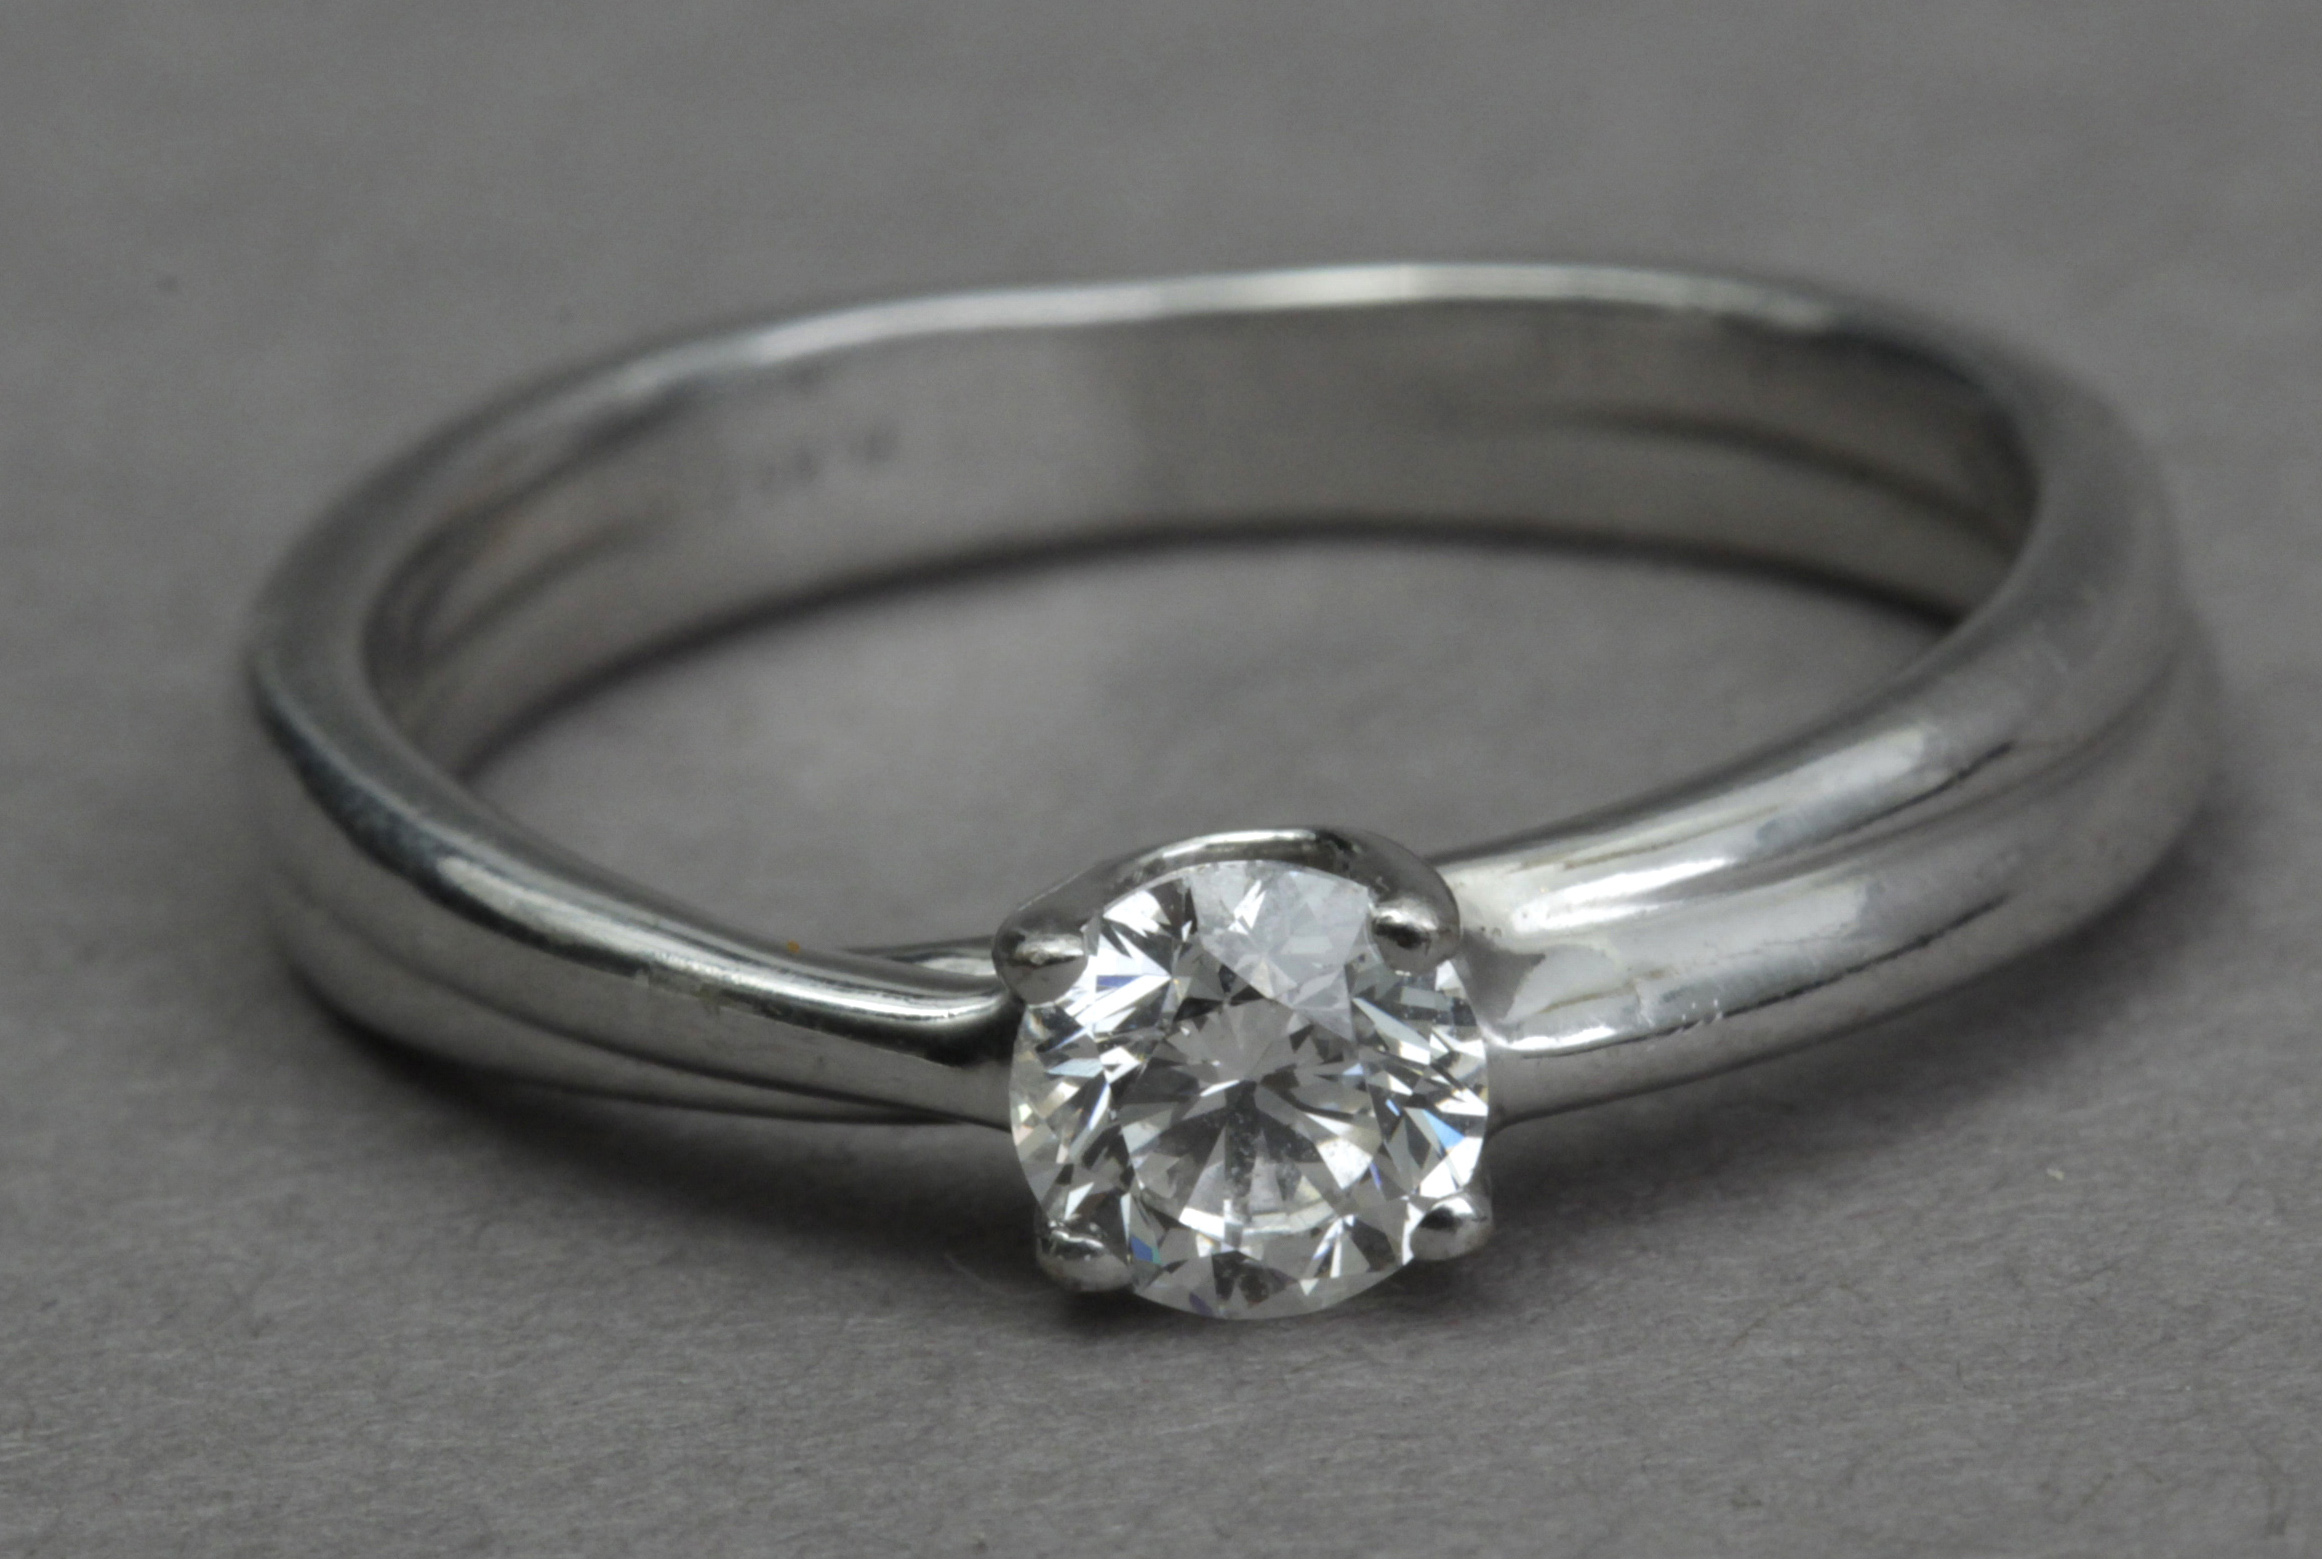 A 0,40 ct. brilliant cut diamond solitaire ring